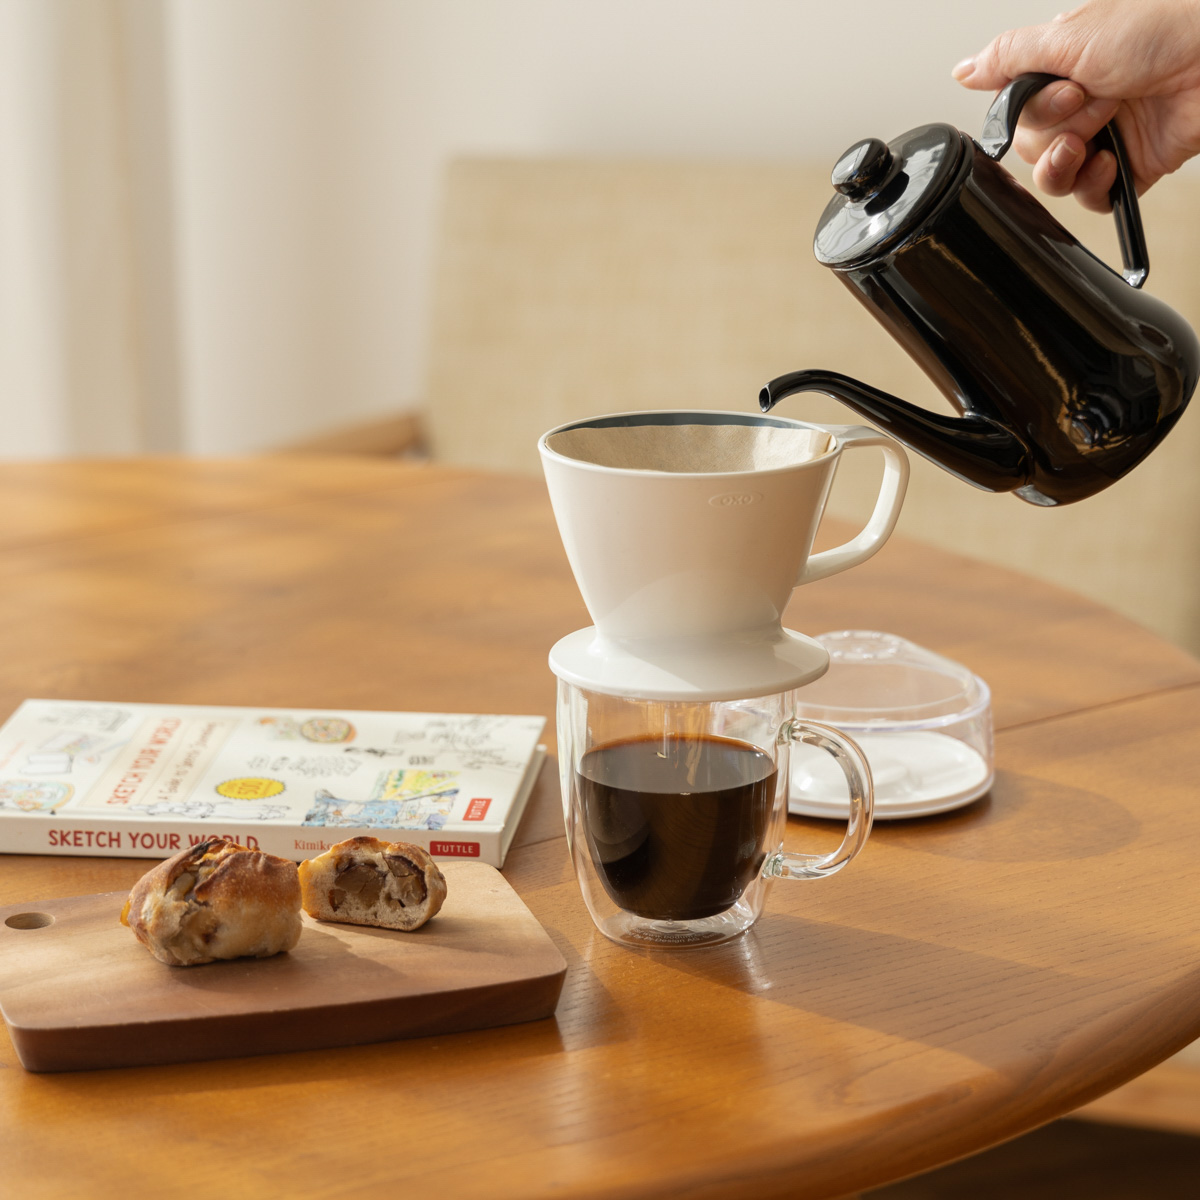 ついに再販開始 オクソー コーヒードリッパー オートドリップコーヒーメーカー 11180100 OXO コーヒーメーカー・エスプレッソマシン 